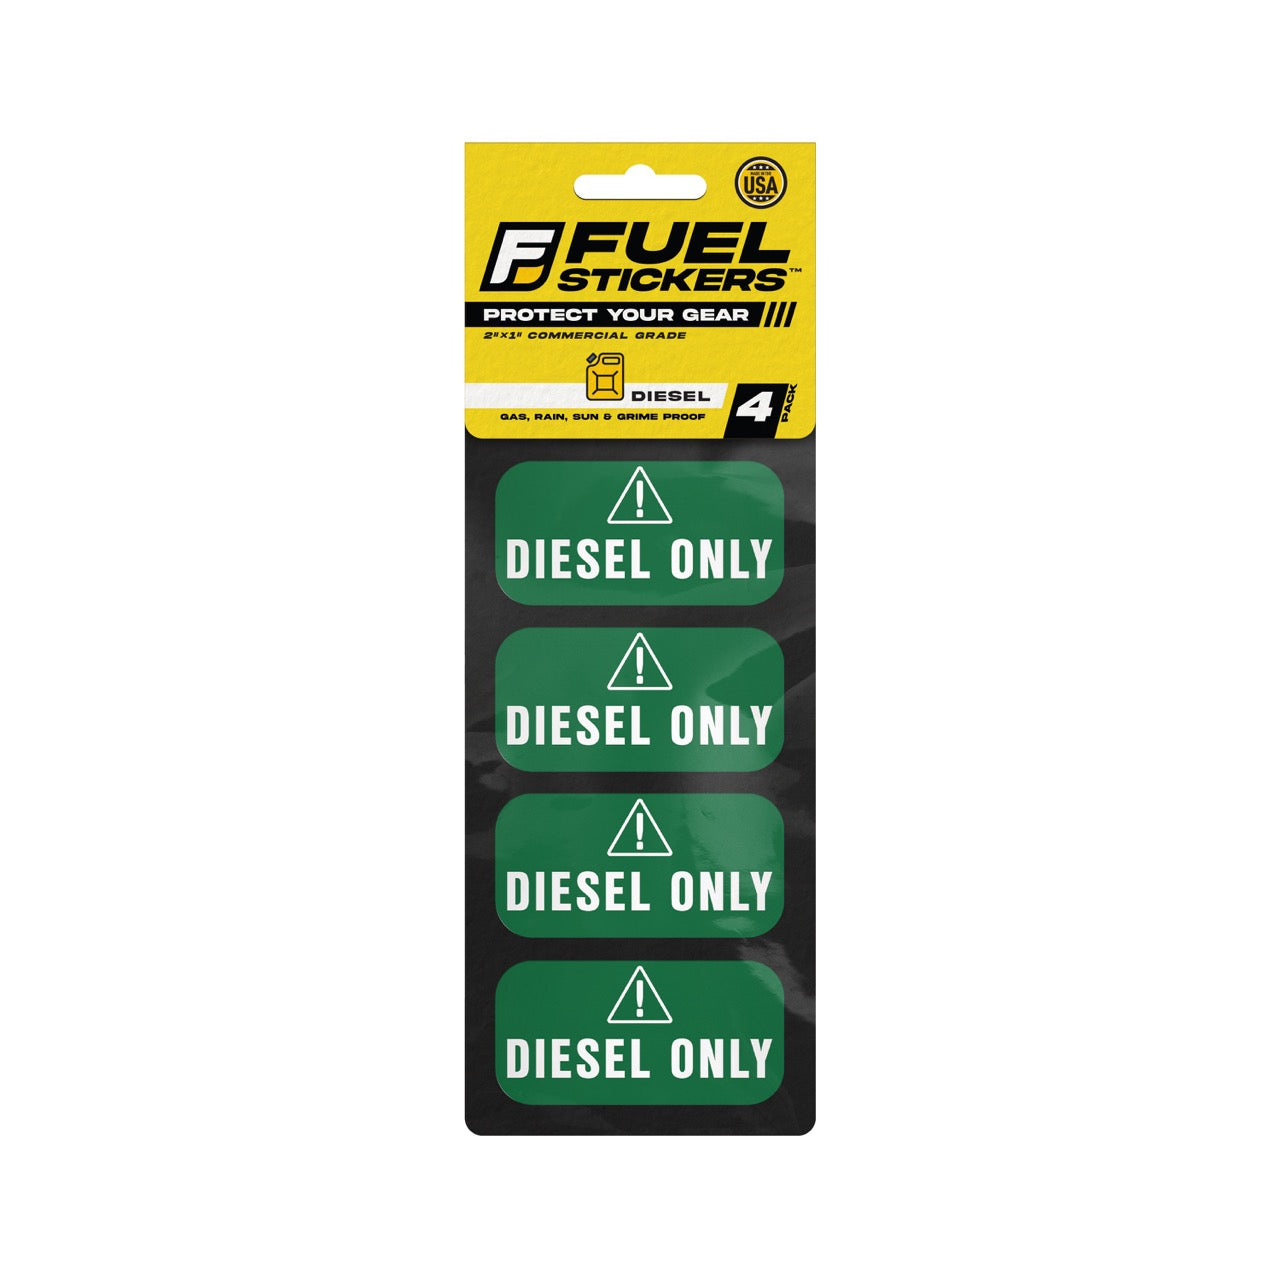 Diesel Only Sticker -  2"x1" - 4 Pack (Green)